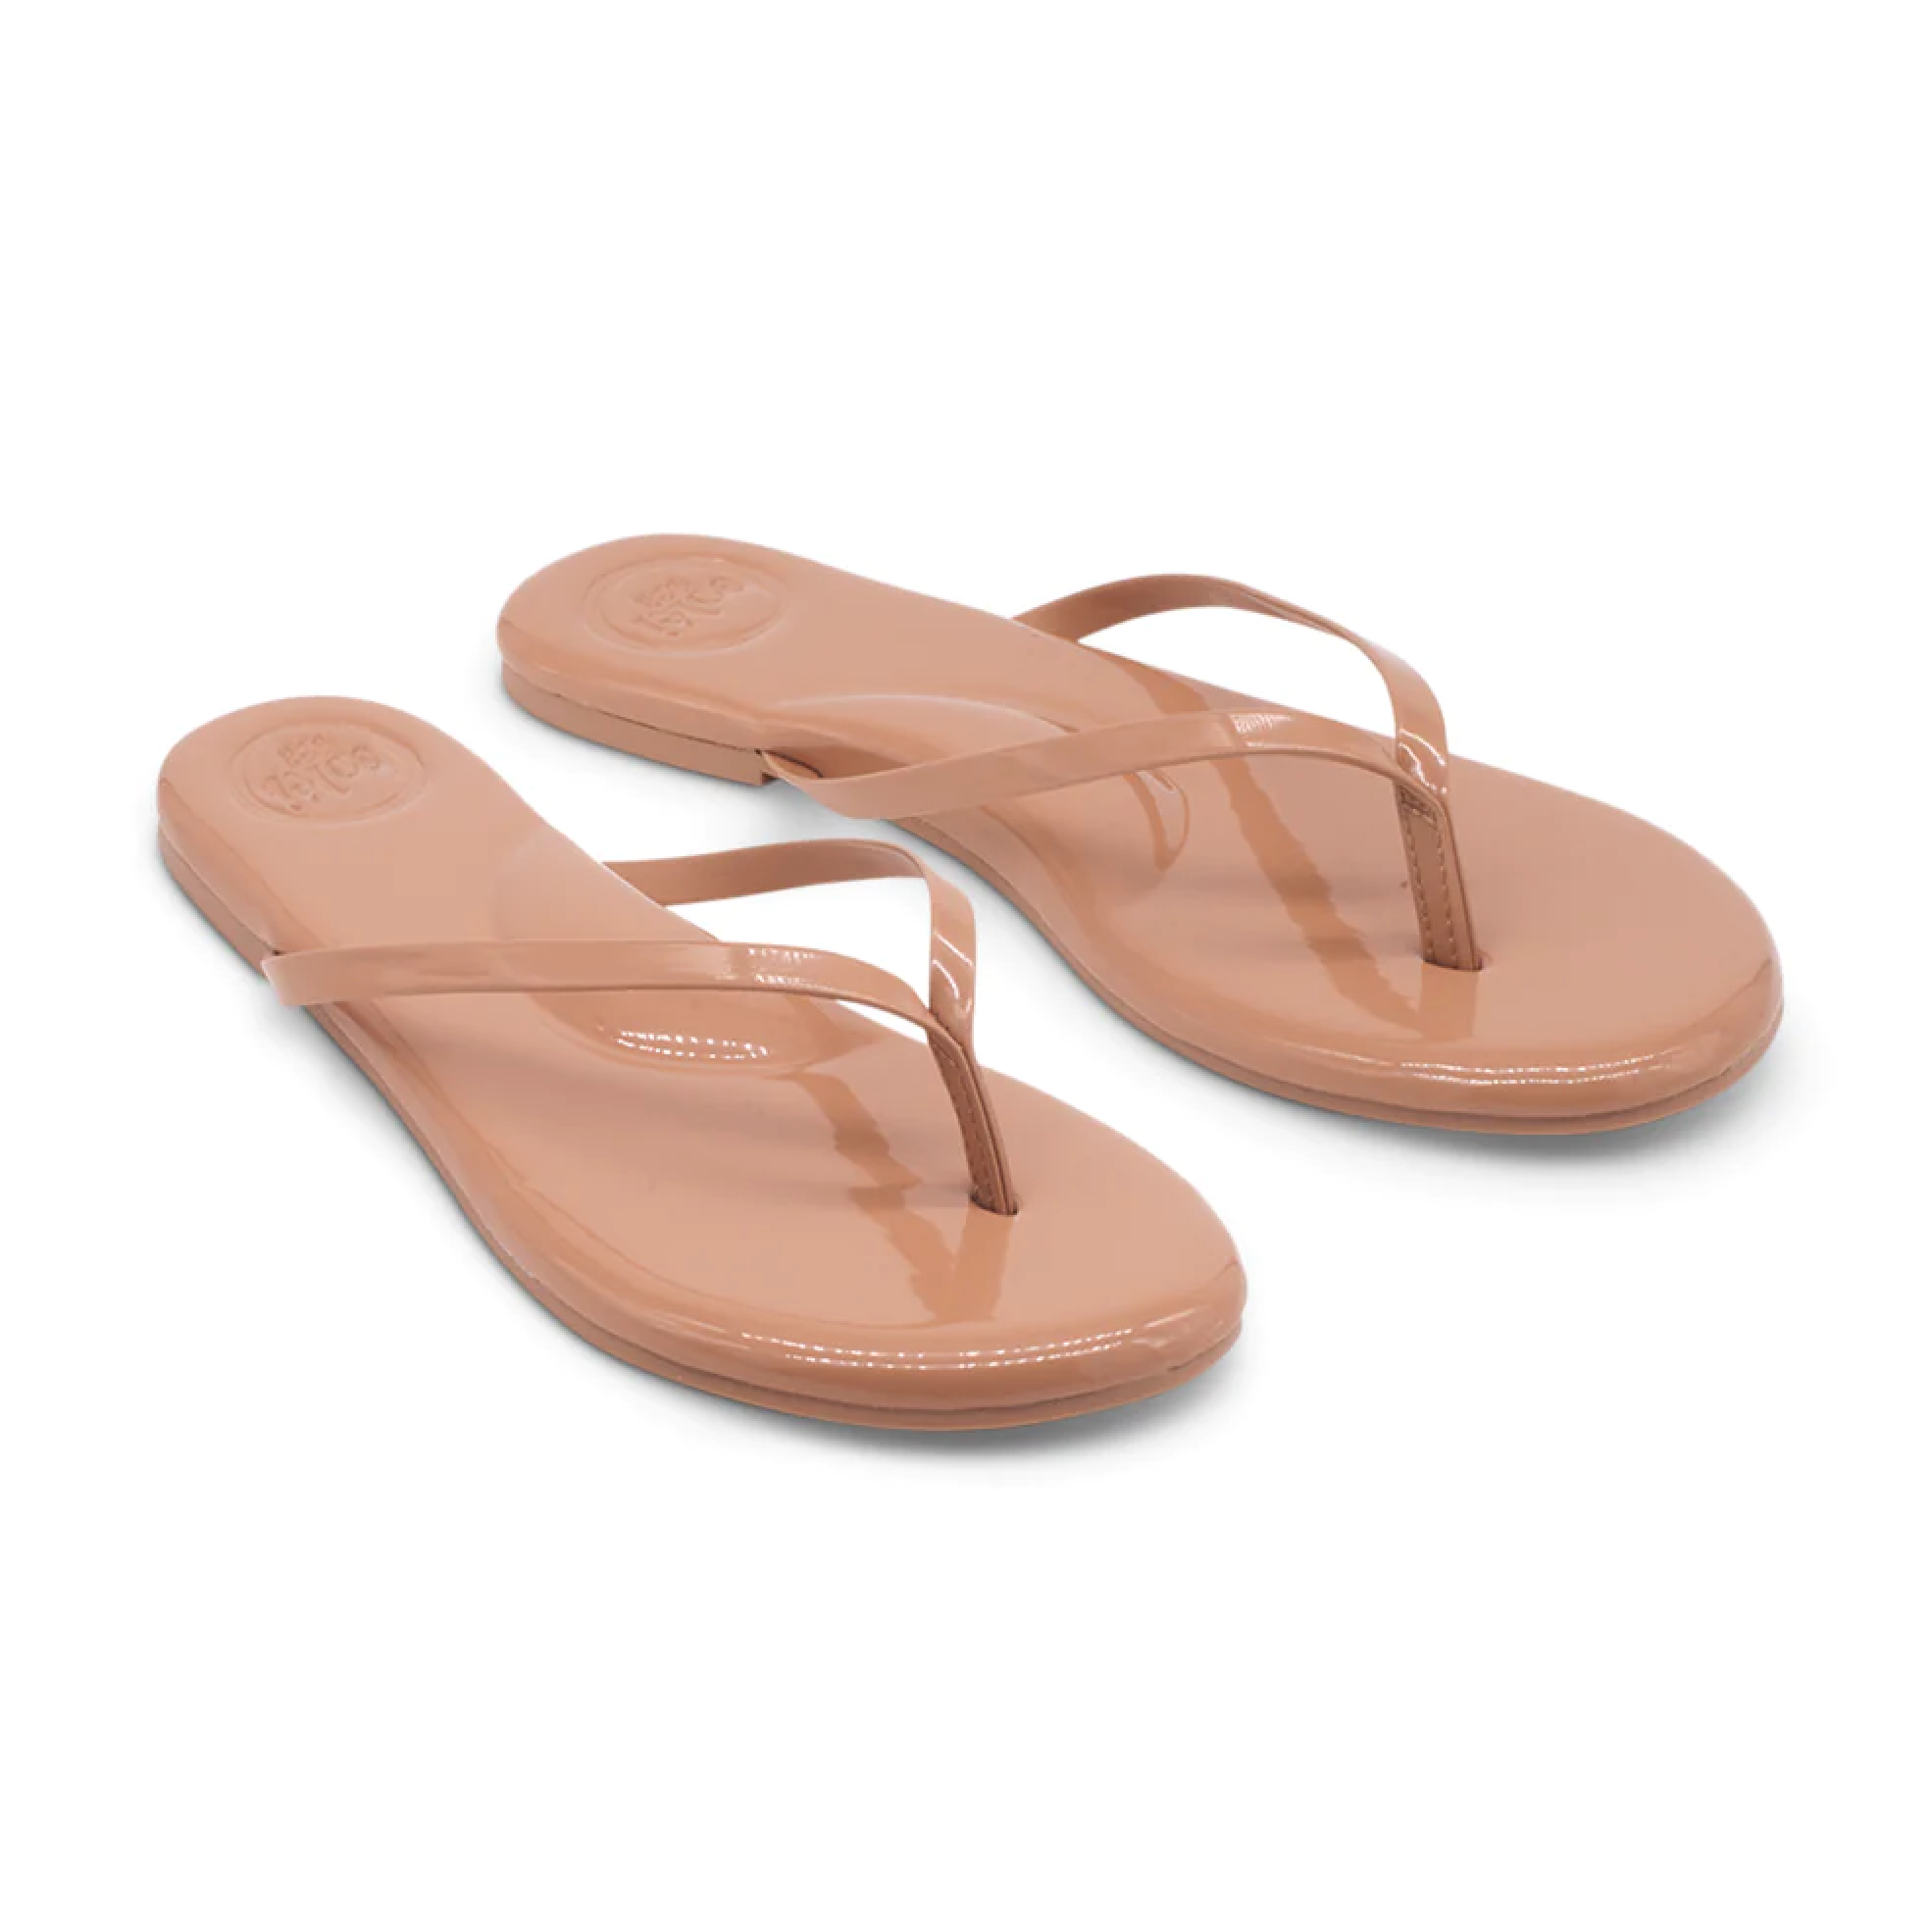 Solei Sea Indie Nude Patent Sandal